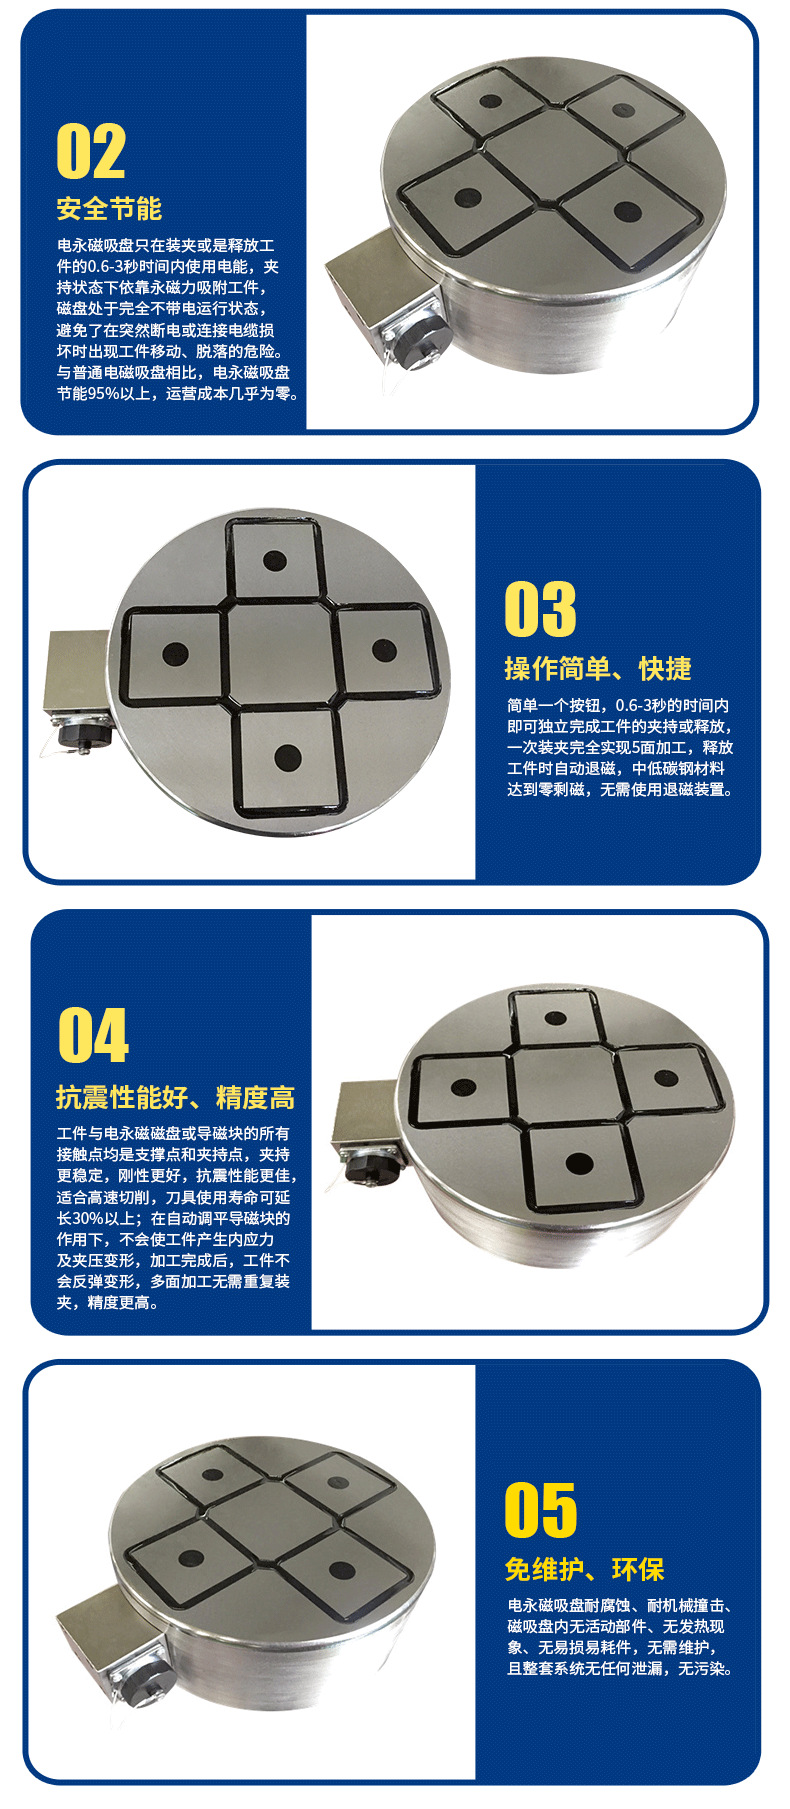 厂家直销电永磁吸盘 磨床用永磁电控磁盘强力电永磁吸盘 定制款示例图3